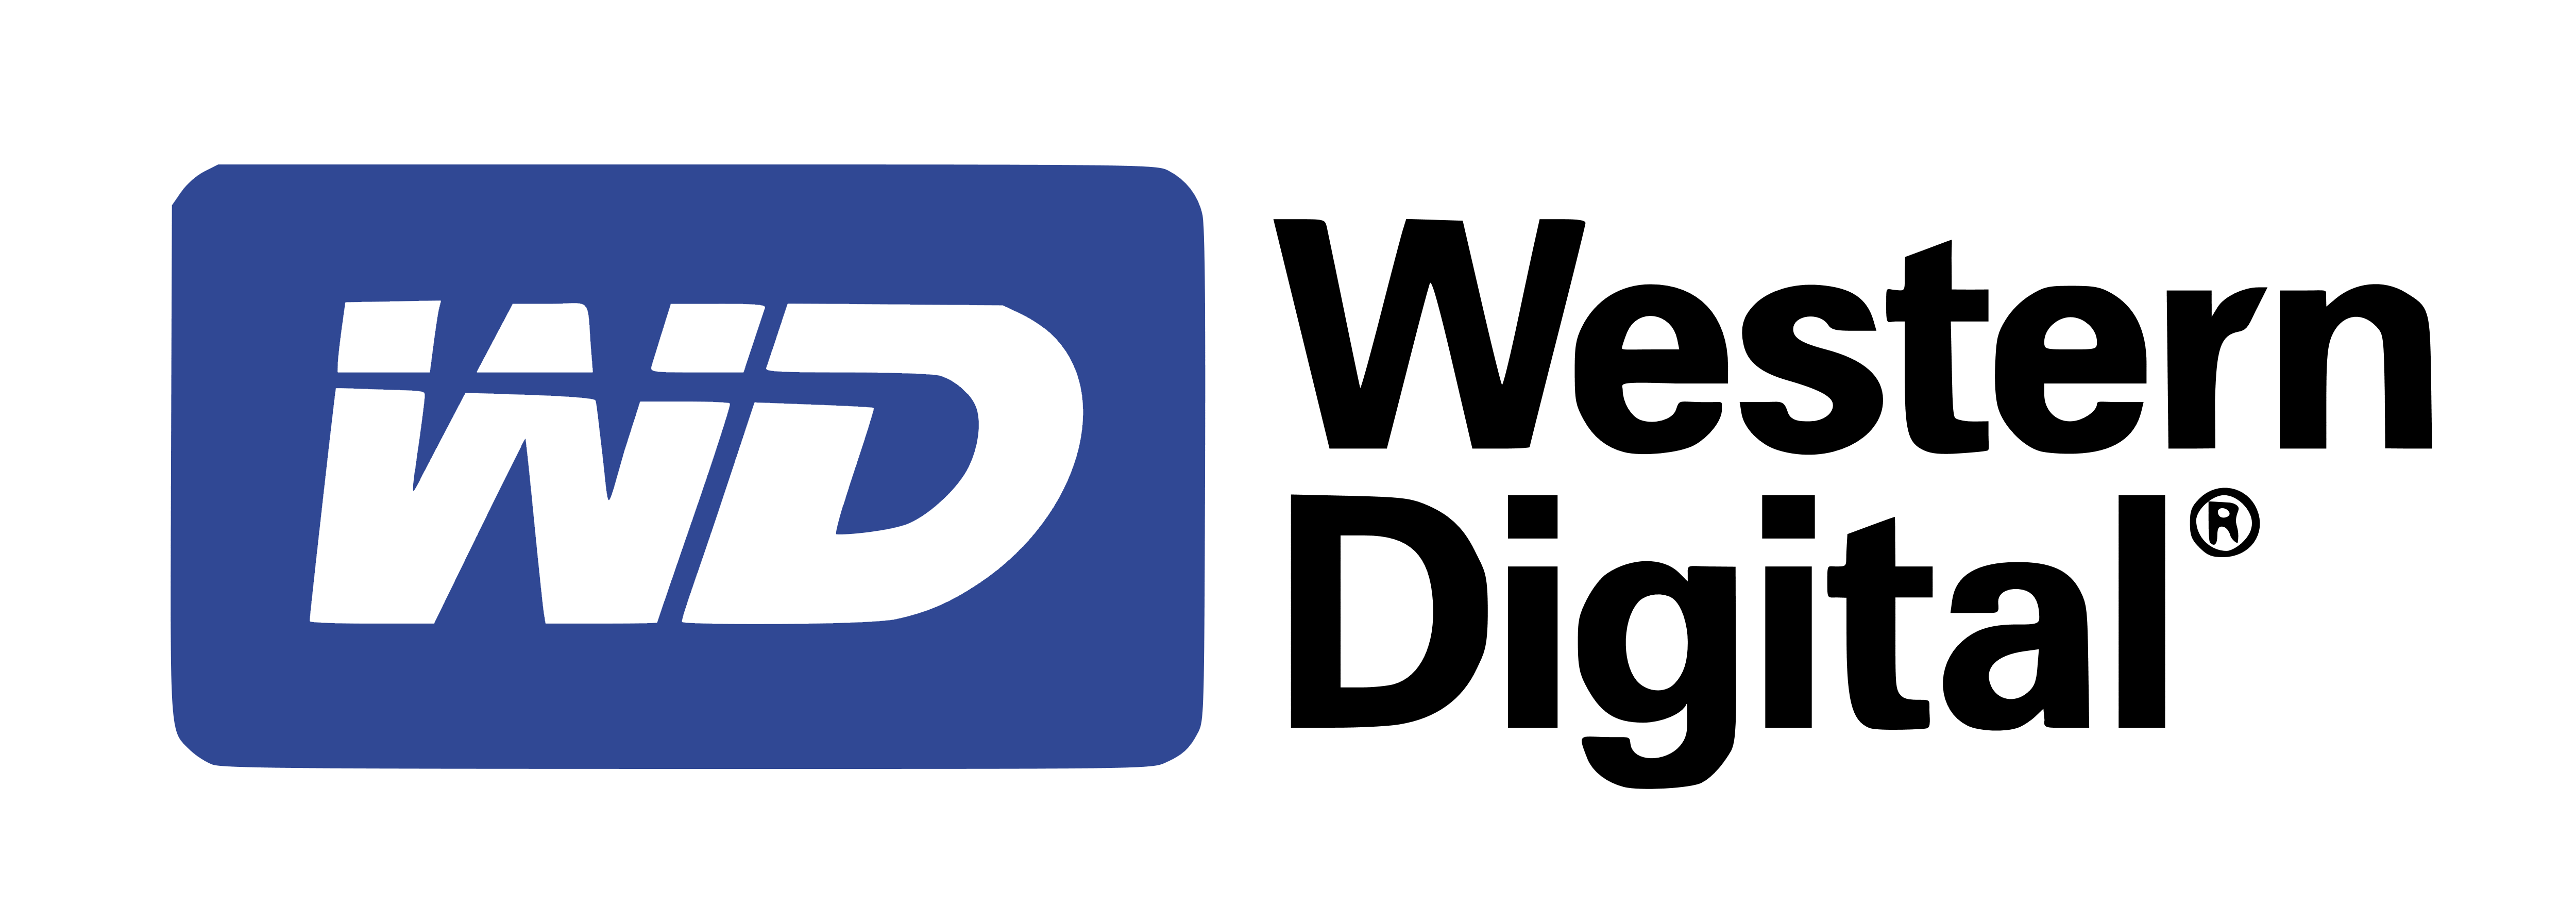 Western Digital Logo - Western Digital – Logos Download